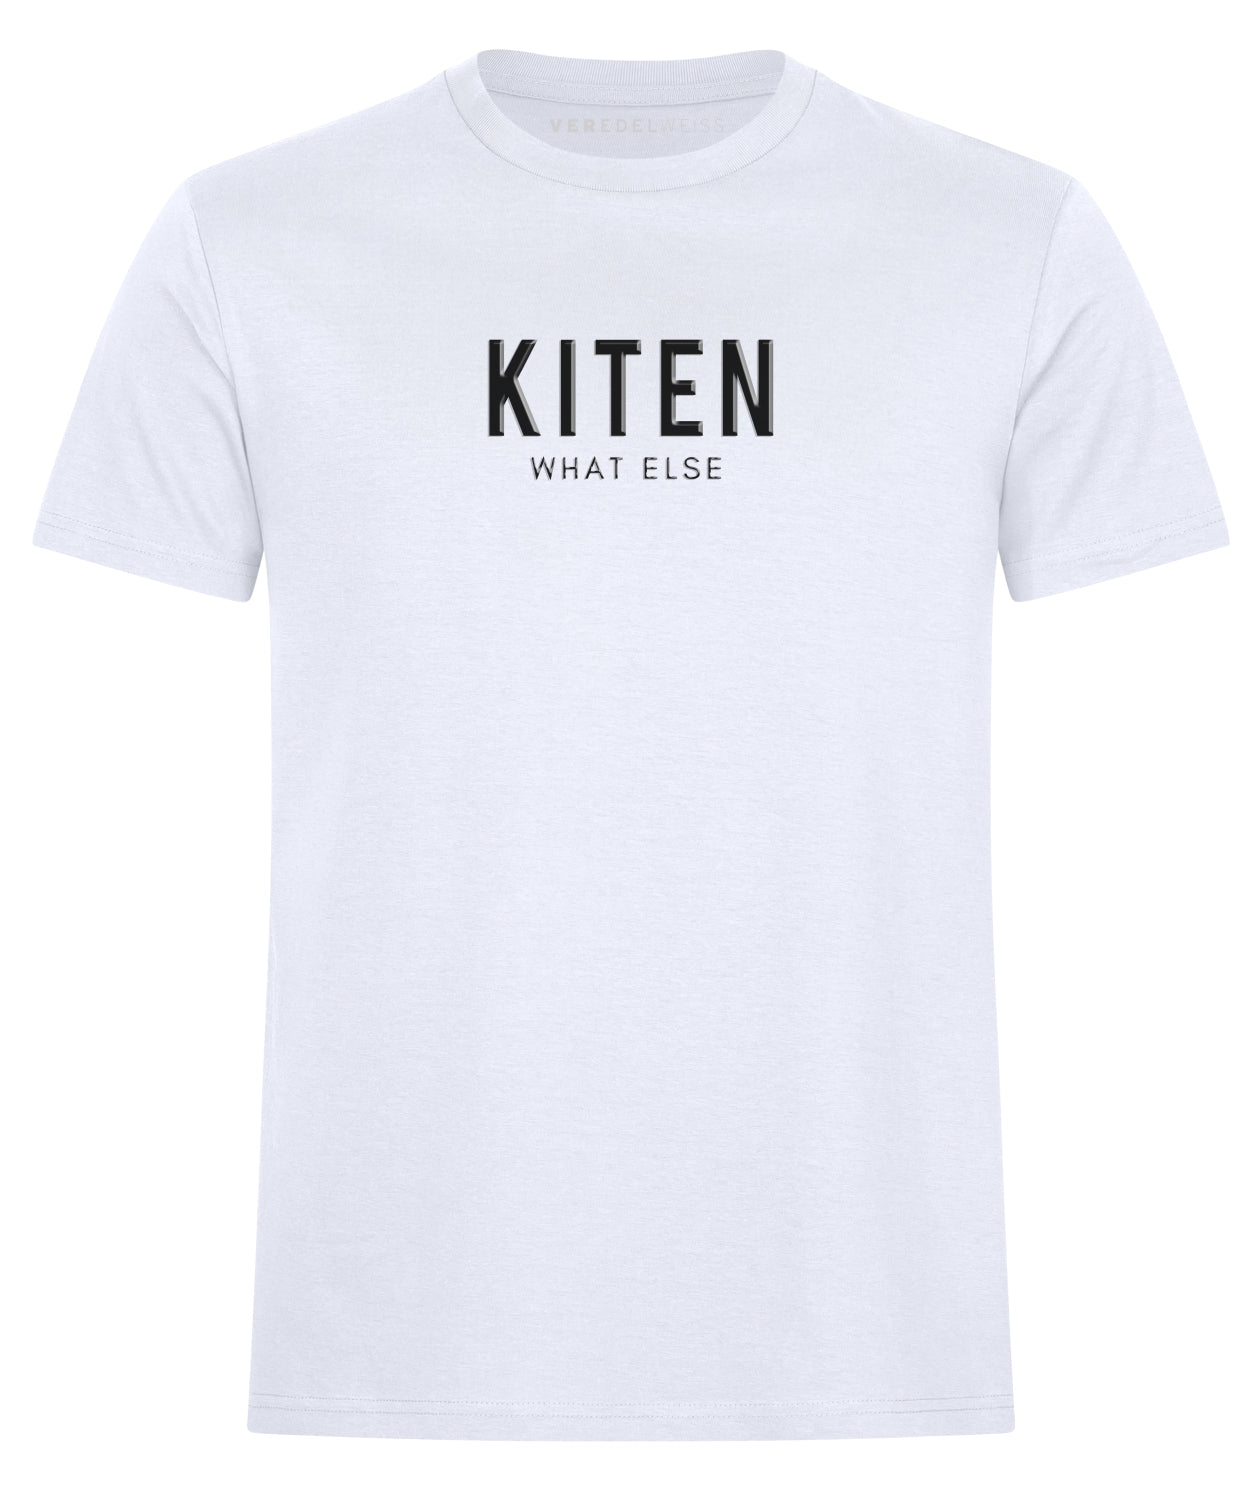 Kiten - What Else (Herren/Unisex) Kiten - What Else (Herren/Unisex)